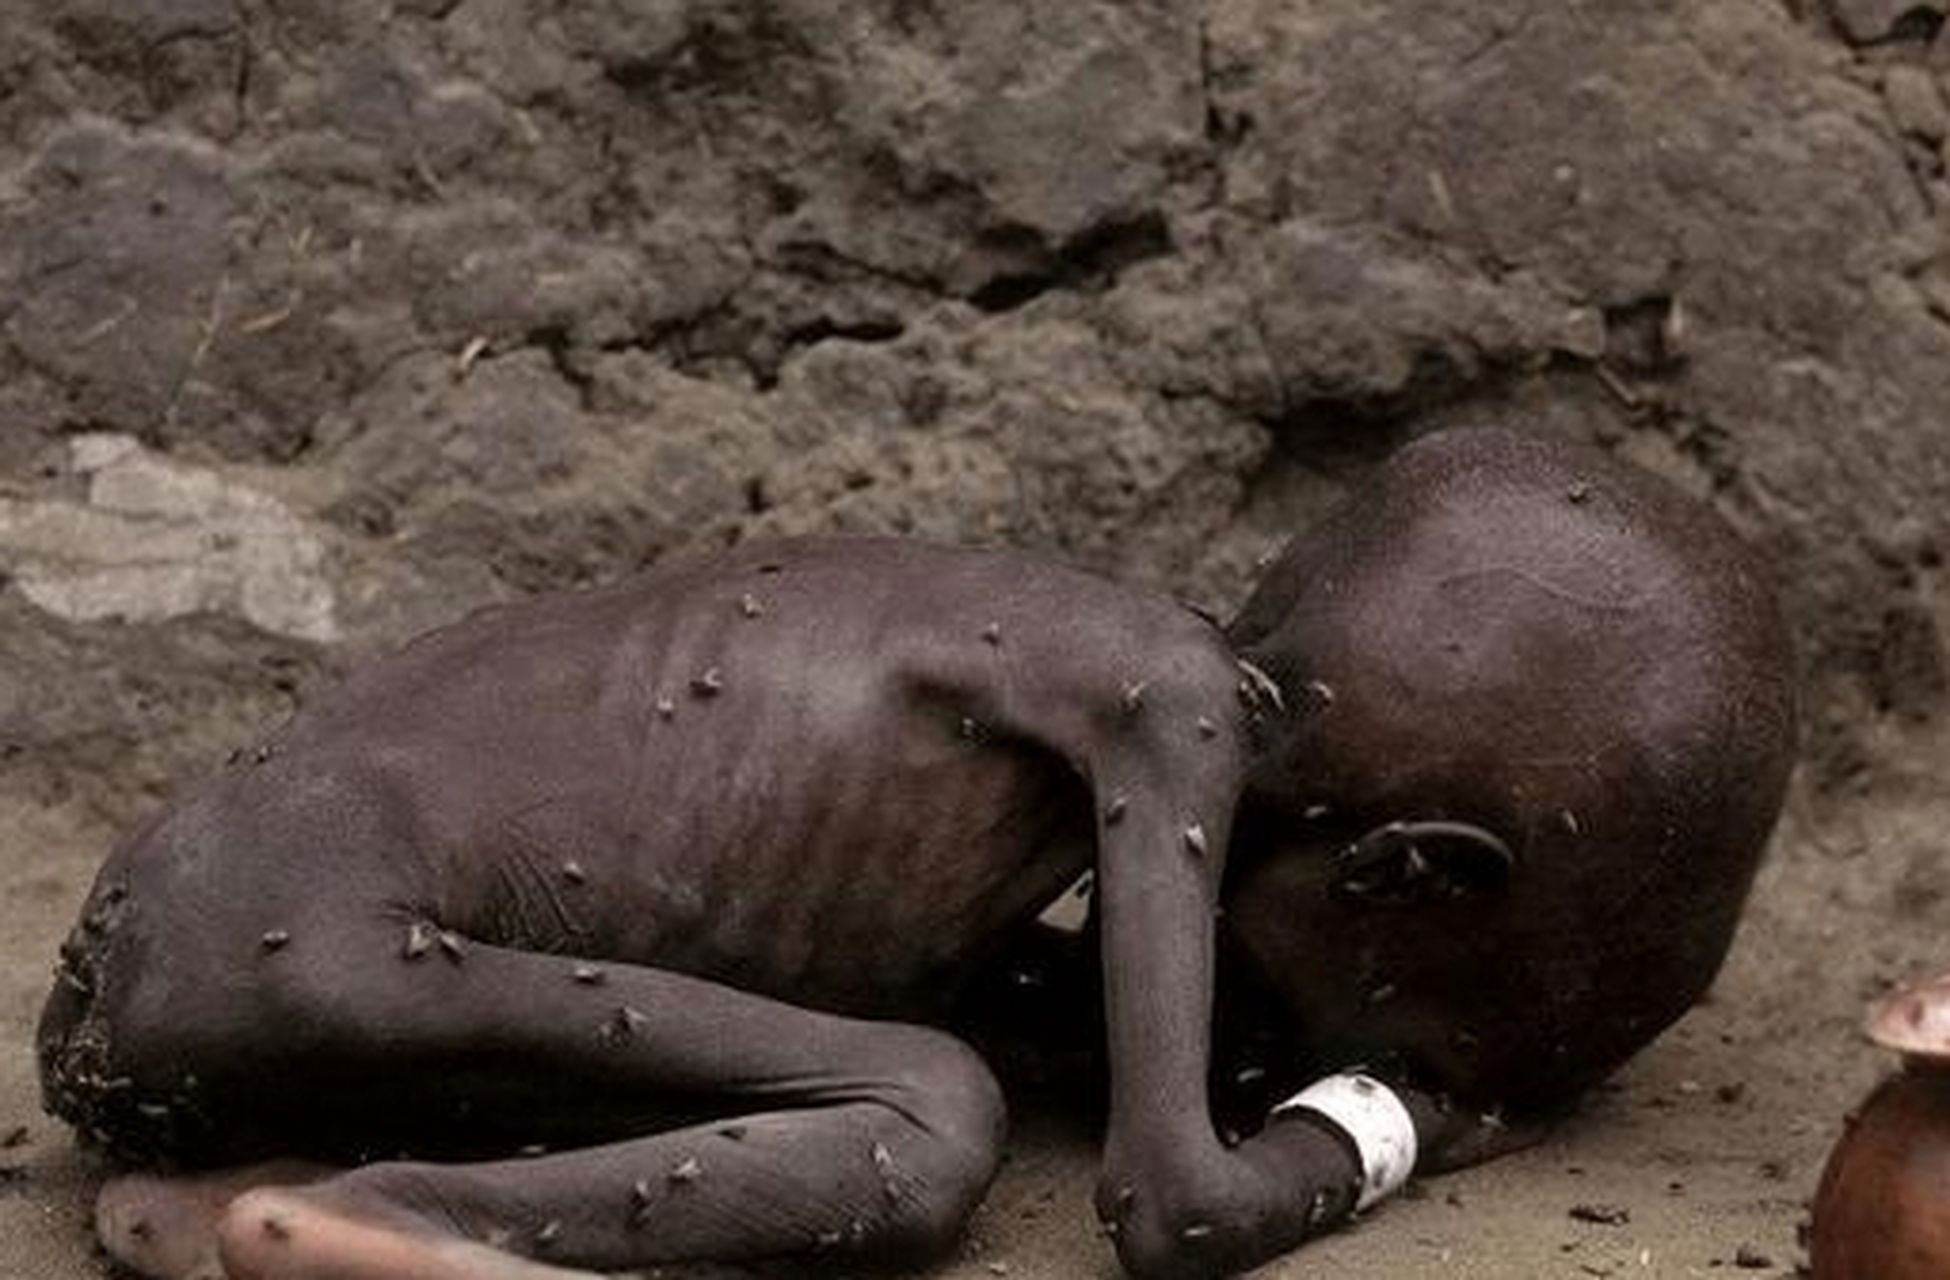 饥荒 非洲图片